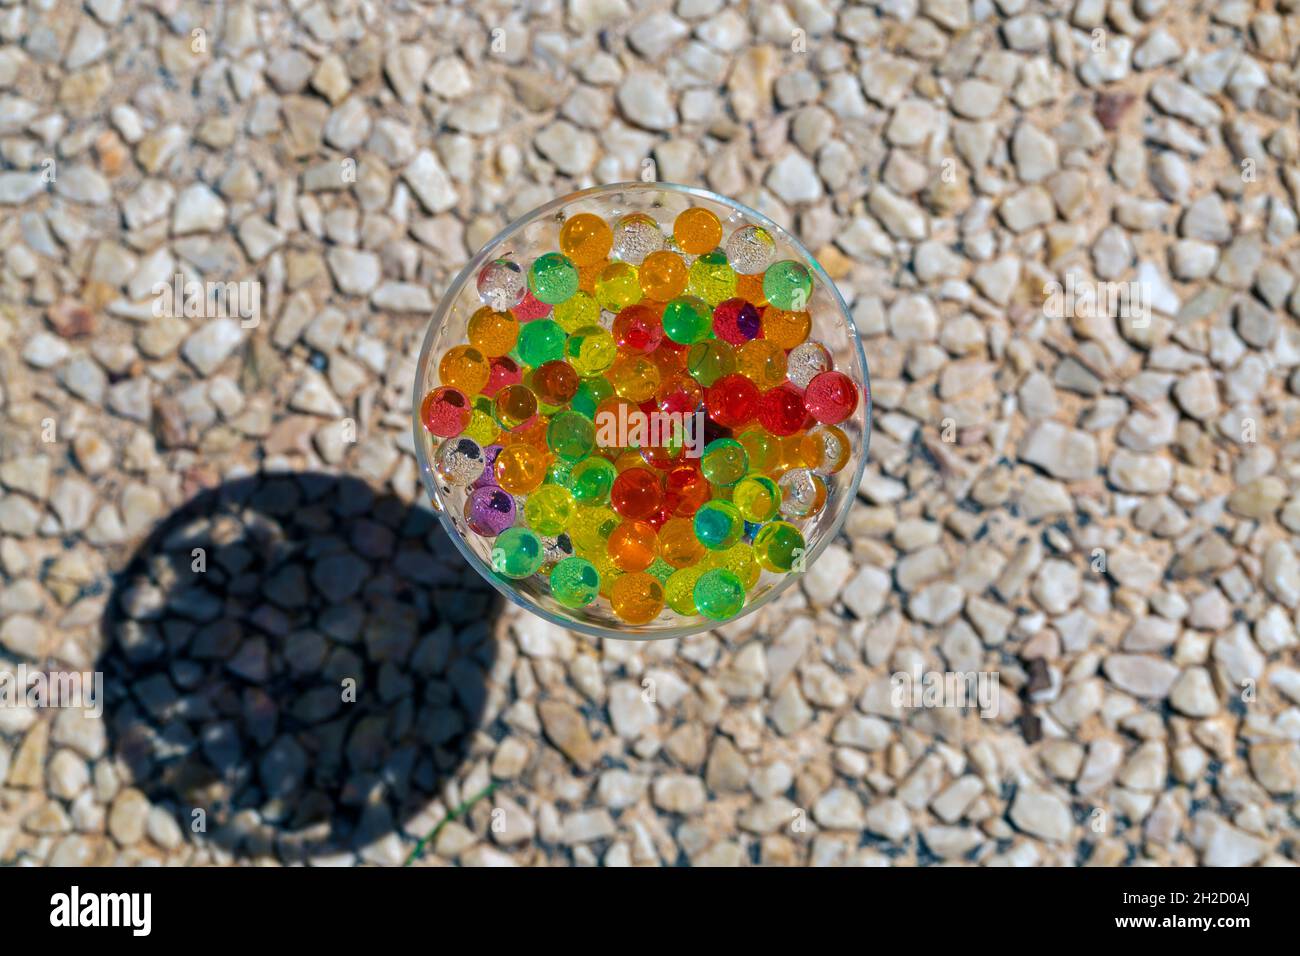 photo d'une tasse en verre placée sur un sol en galets, remplie de perles de couleur (orbis) avec mise au point sélective Banque D'Images